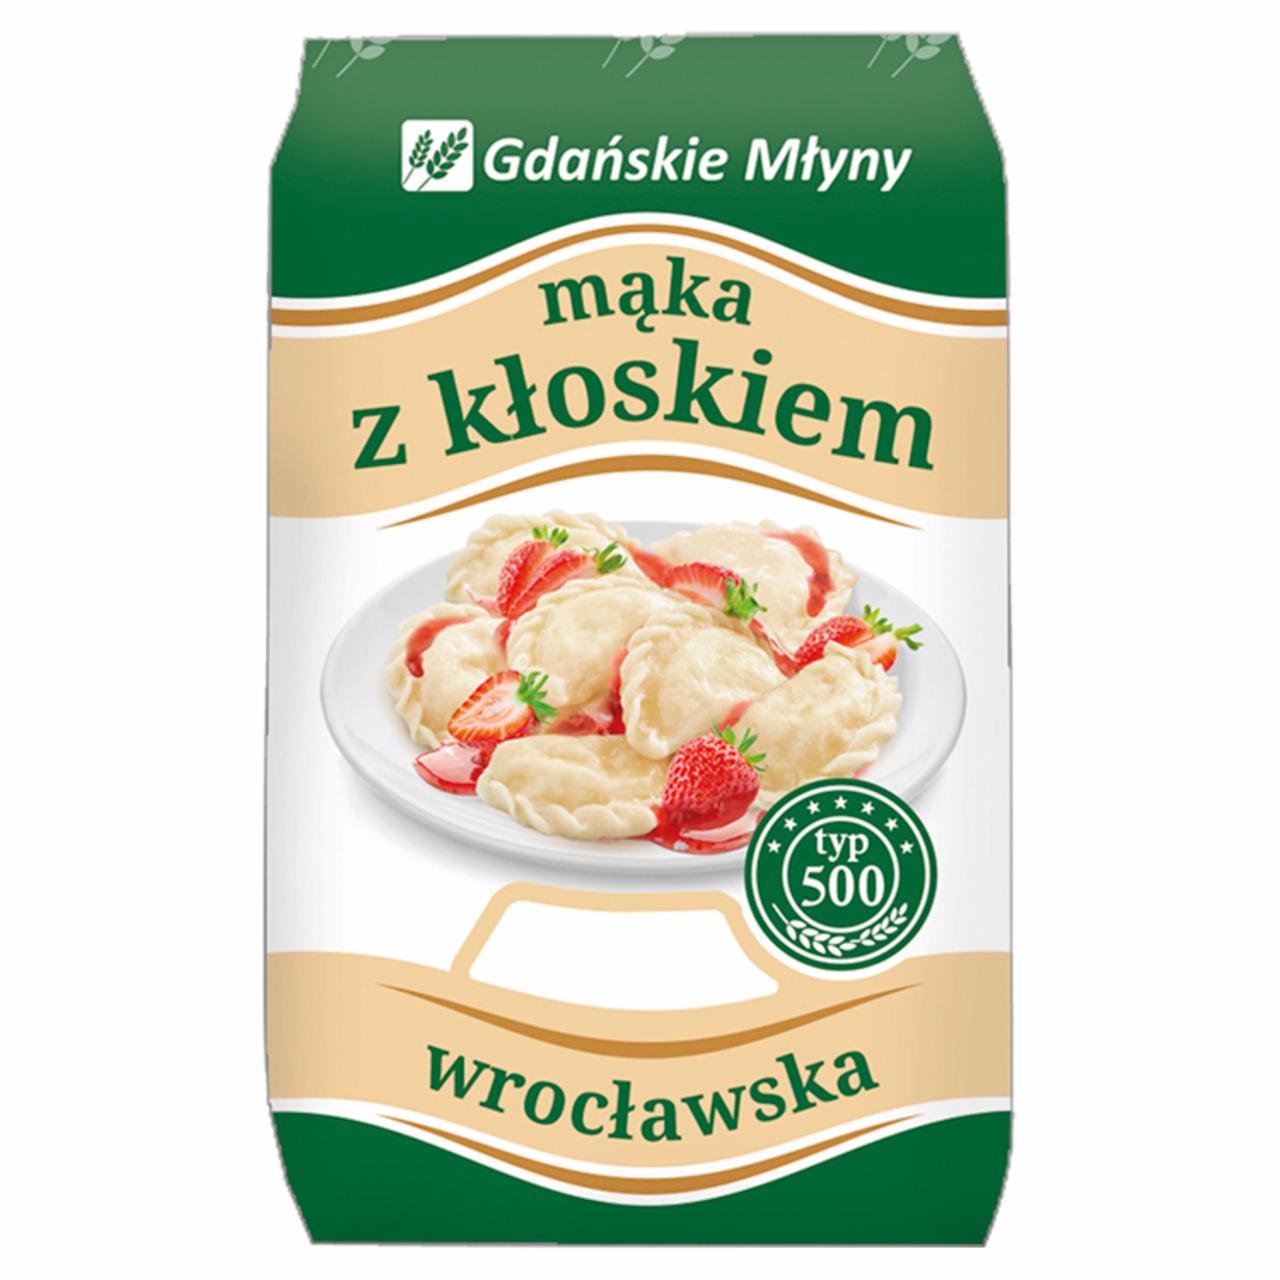 Zdjęcia - Gdańskie Młyny Mąka z kłoskiem Mąka pszenna wrocławska typ 500 1 kg